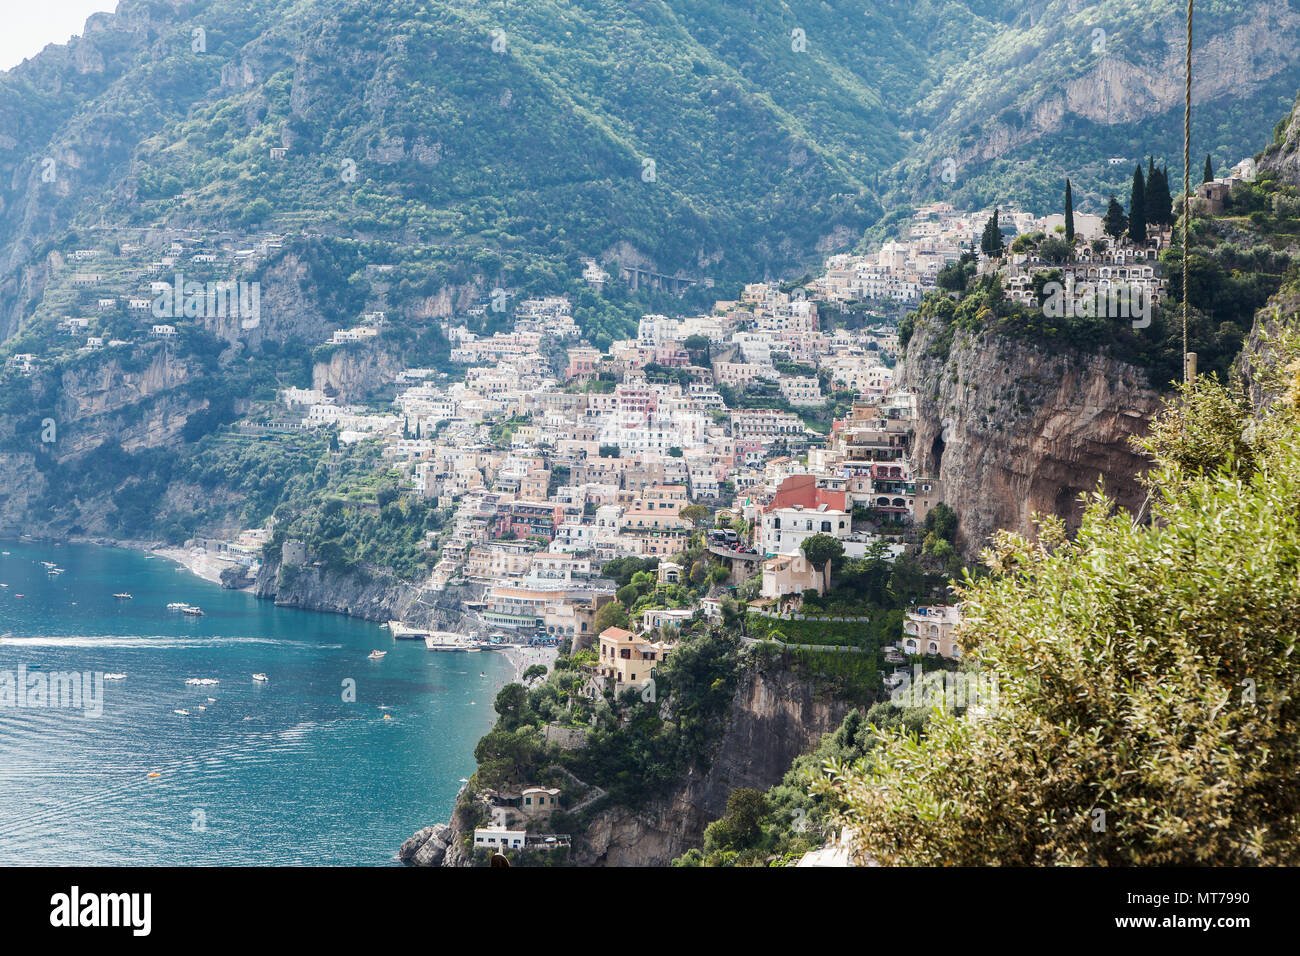 Der Weg der Götter von Agerola nach Positano Amalfiküste Italien, hiking on the path of gods Amalficoast Italy, Blick auf Positano, View on Positano Stock Photo